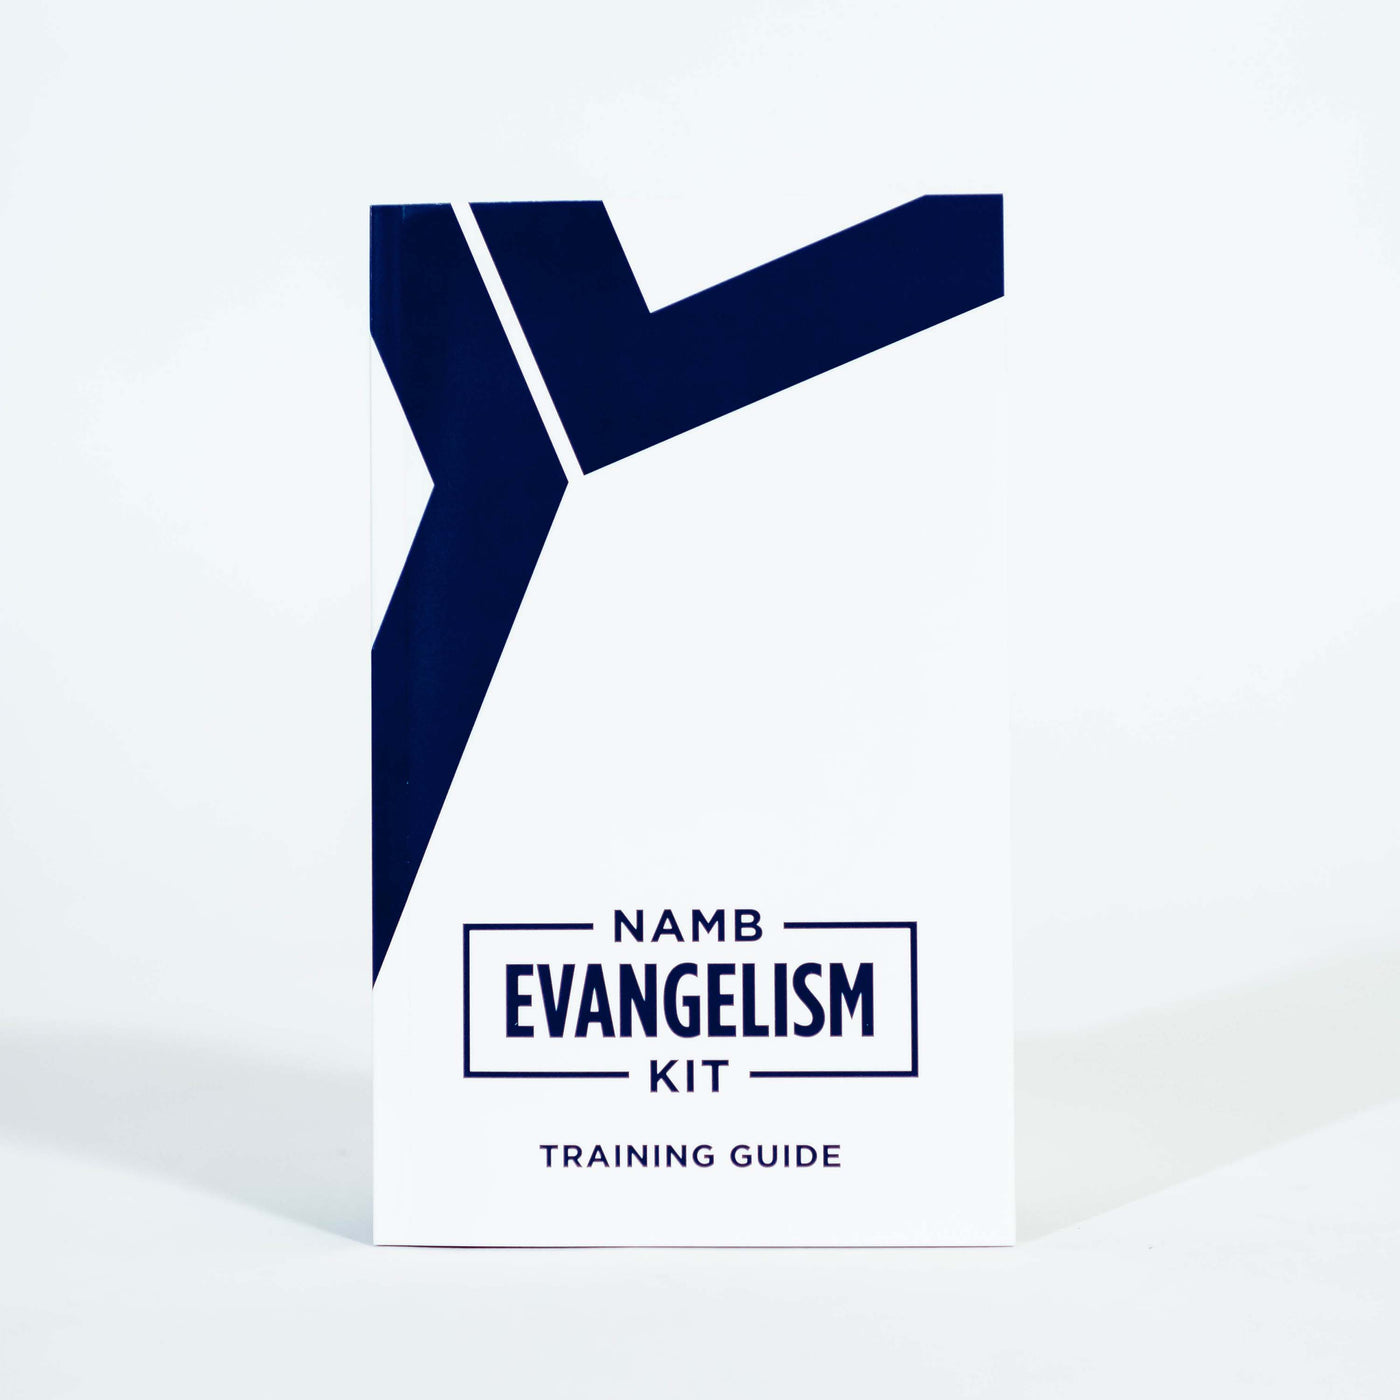 NAMB Evangelism Kit Training Guide